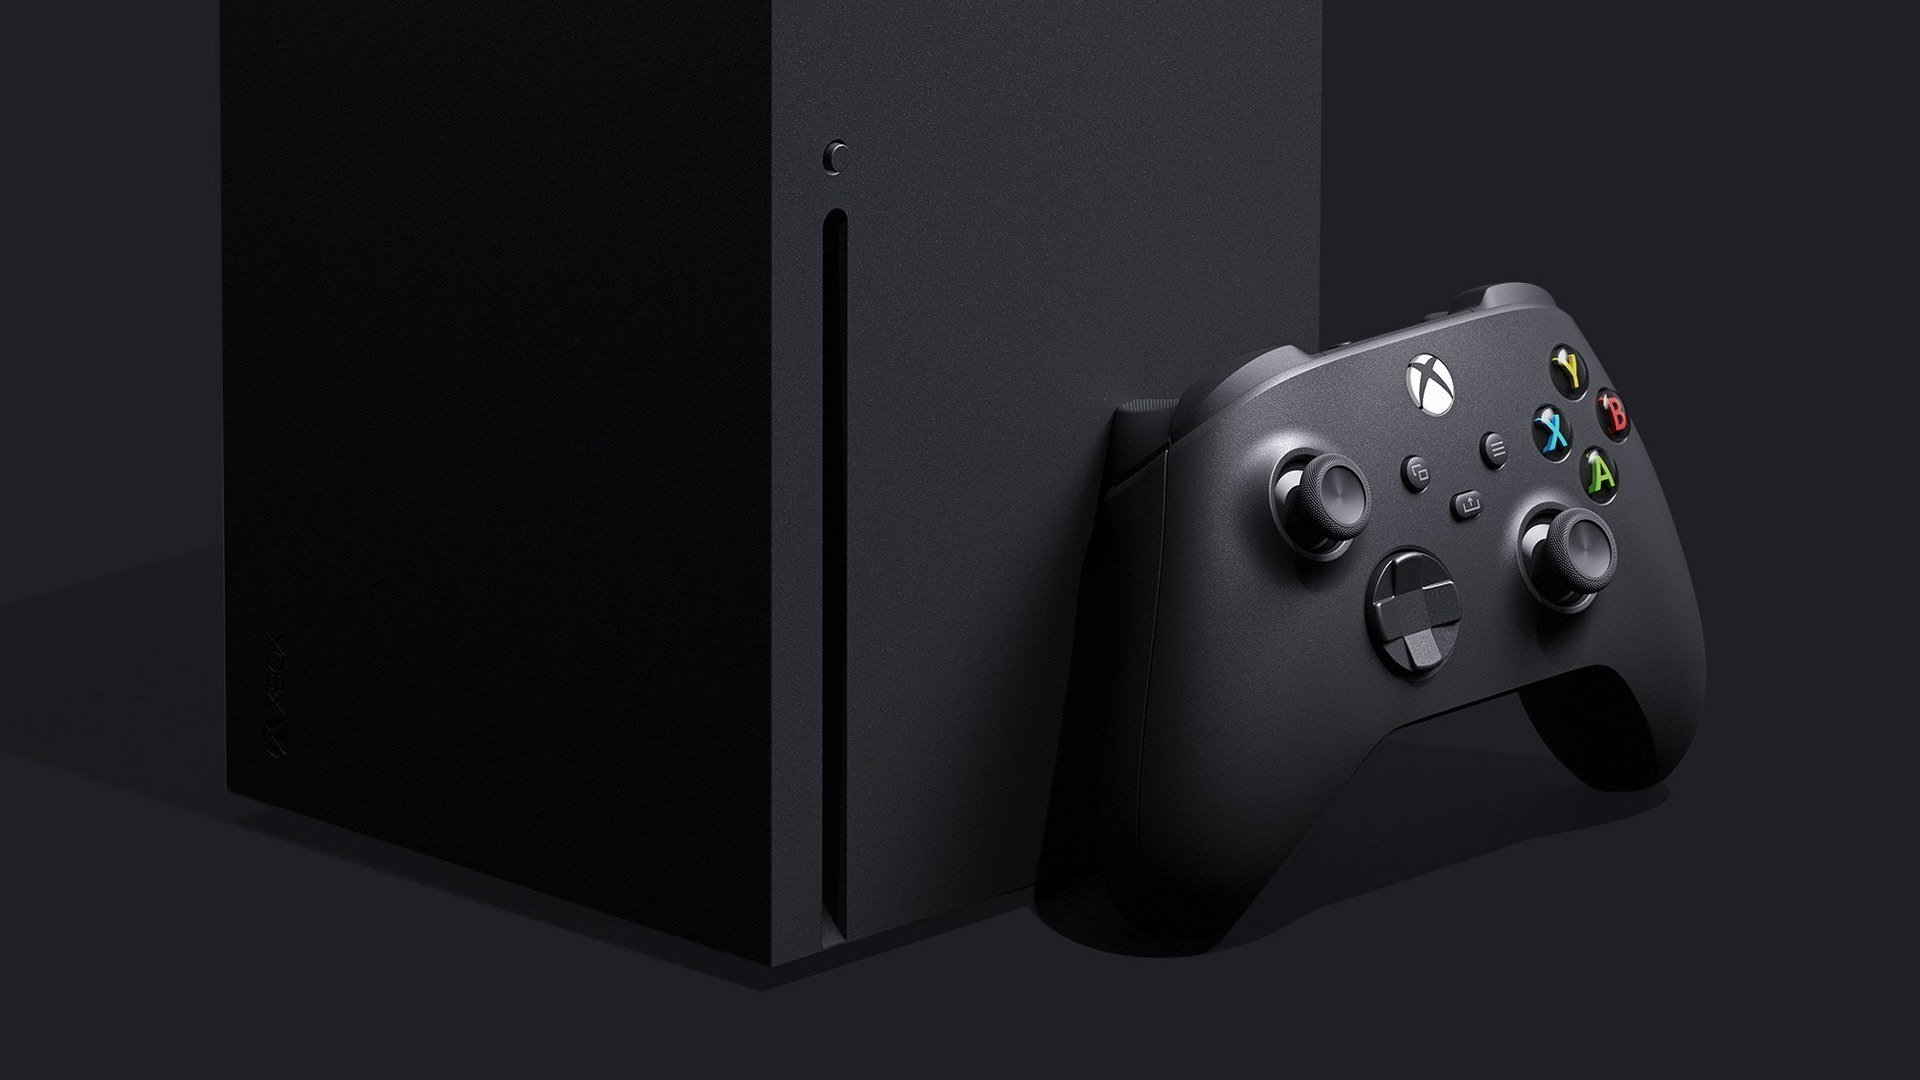 Totul a fost dezvăluit în Evenimentul Inside Xbox din mai